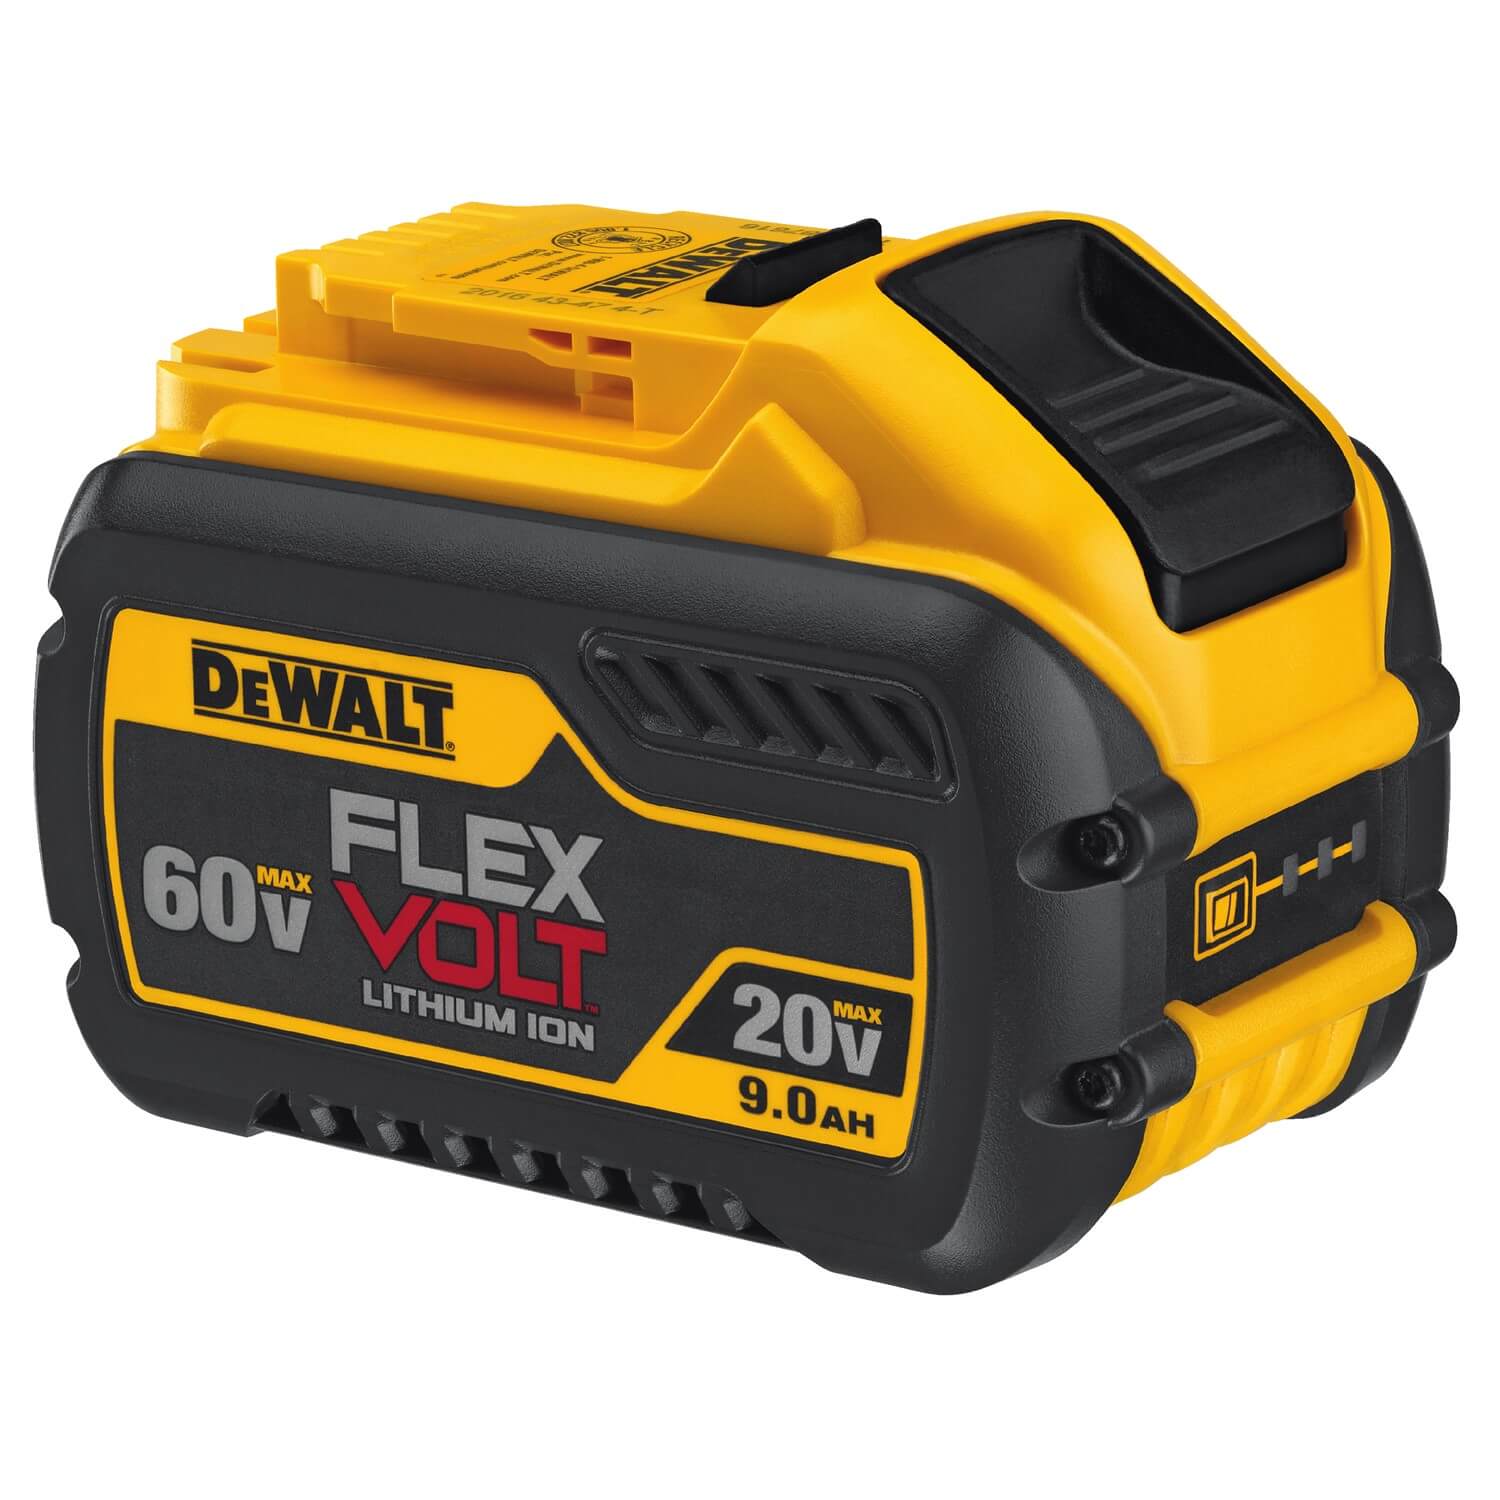 DeWalt DCB609 - 60V FlexVolt 9.0Ah Battery - wise-line-tools